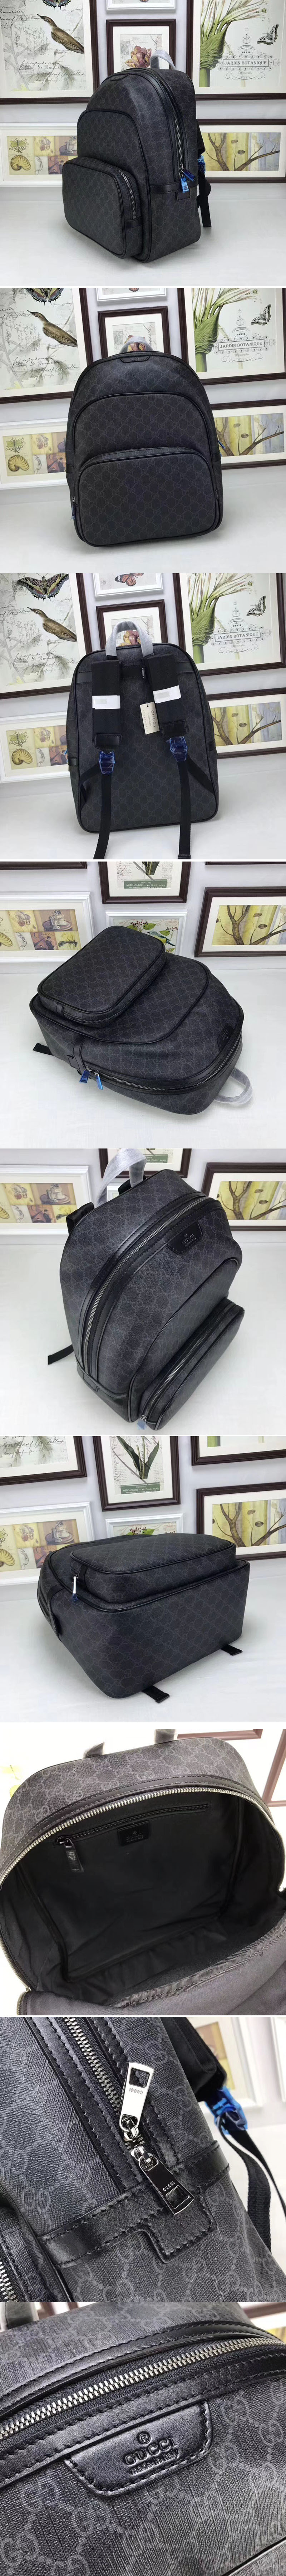 Replica Gucci 322069 Supreme Canvas Backpack Black